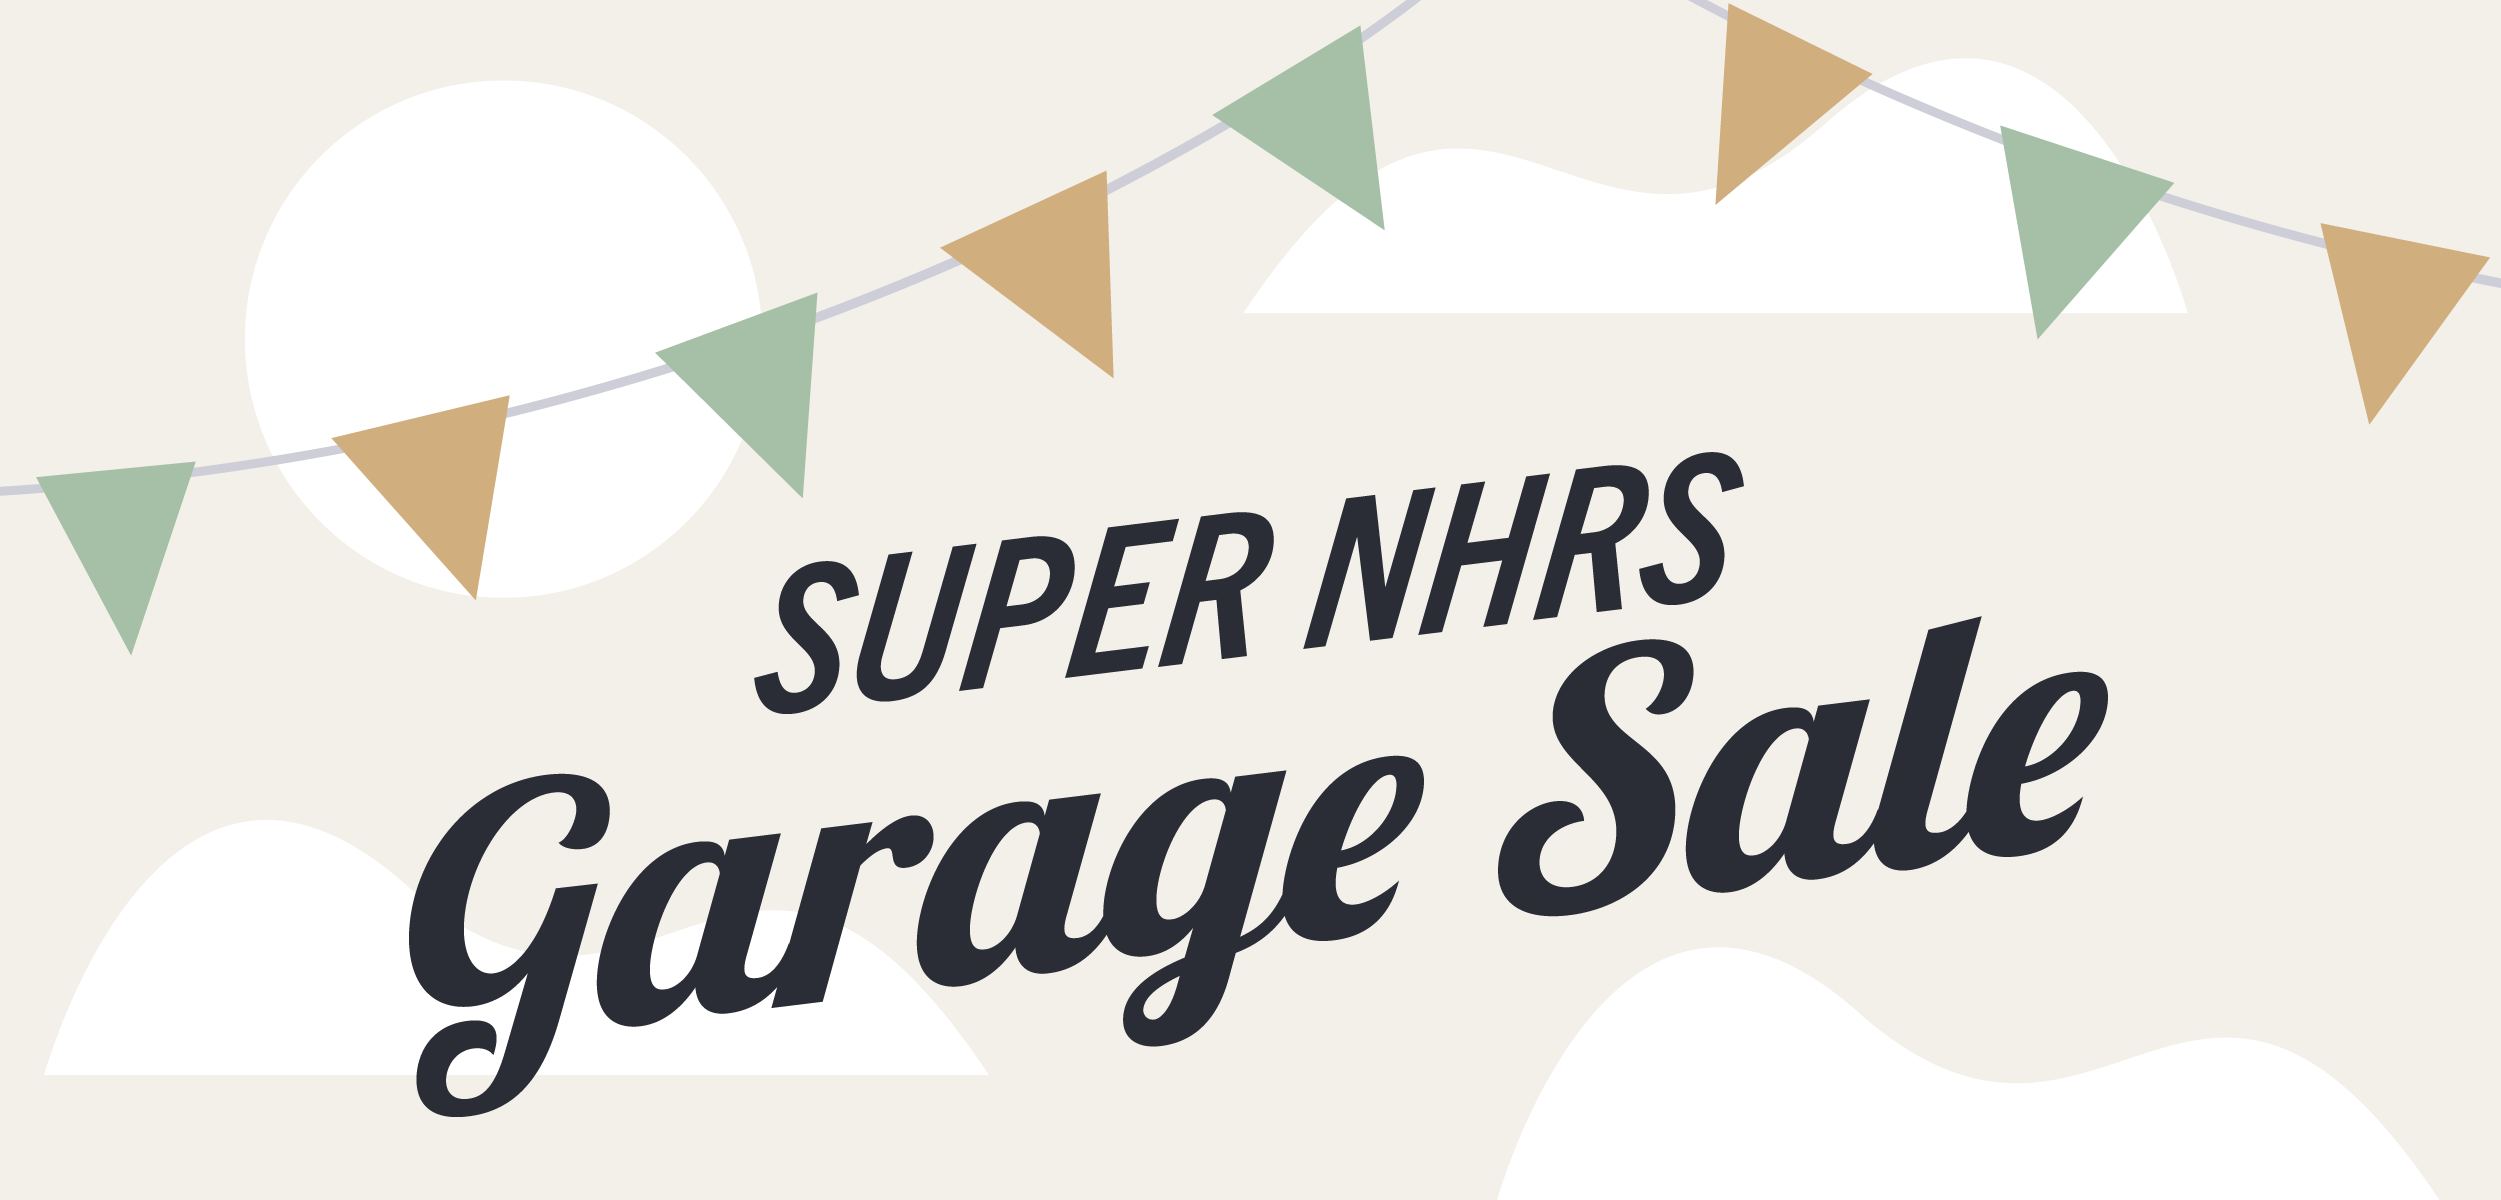 Super NHRS Garage Sale